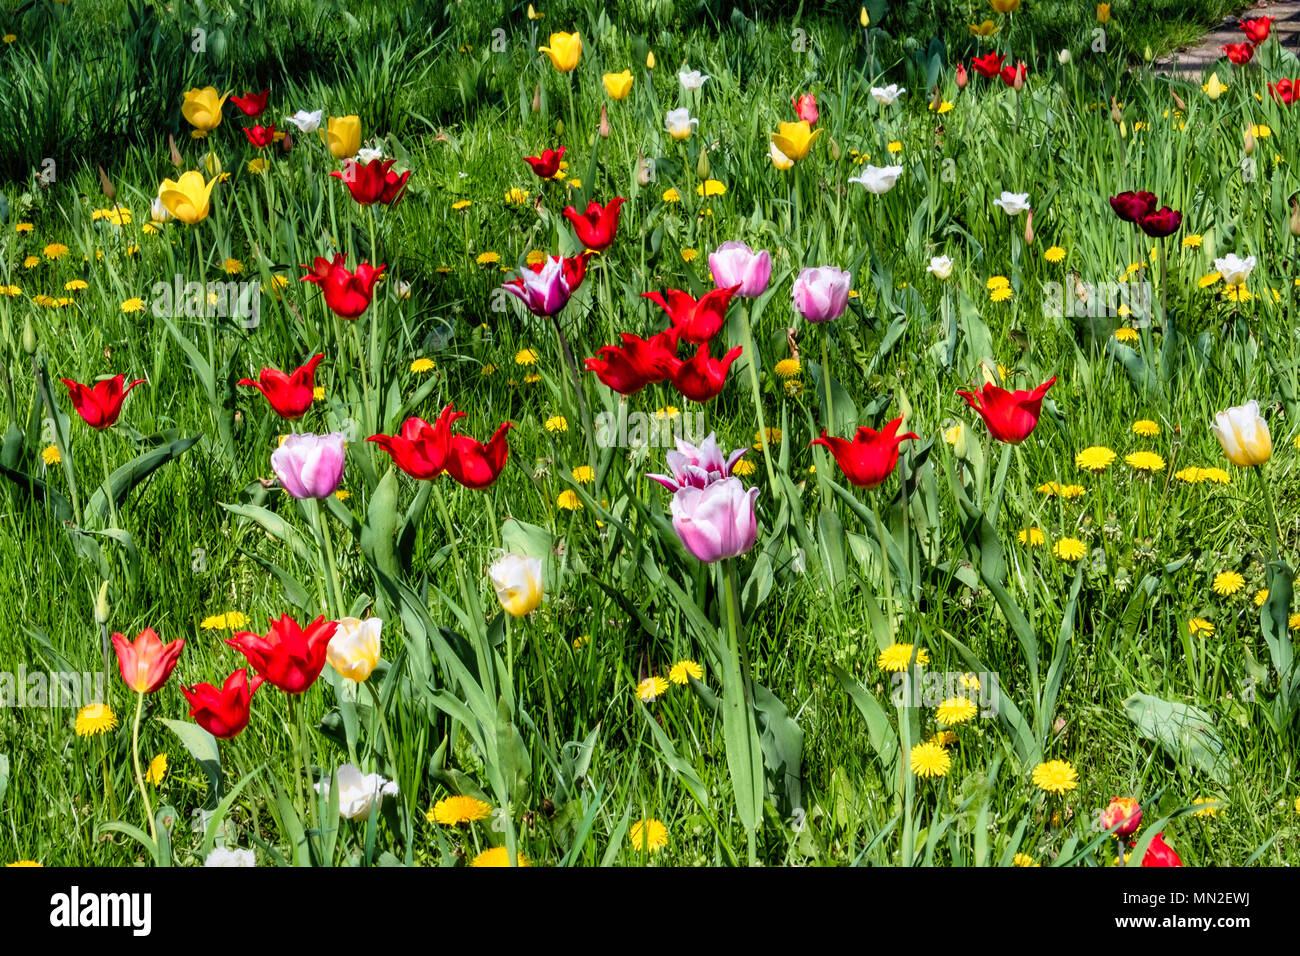 Britzer Garten, Neukölln, Berlin, Allemagne. En 2018. Jardin avec des bulbes de printemps, jaune, rouge et des tulipes roses et pissenlits jaunes dans l'herbe verte. Banque D'Images